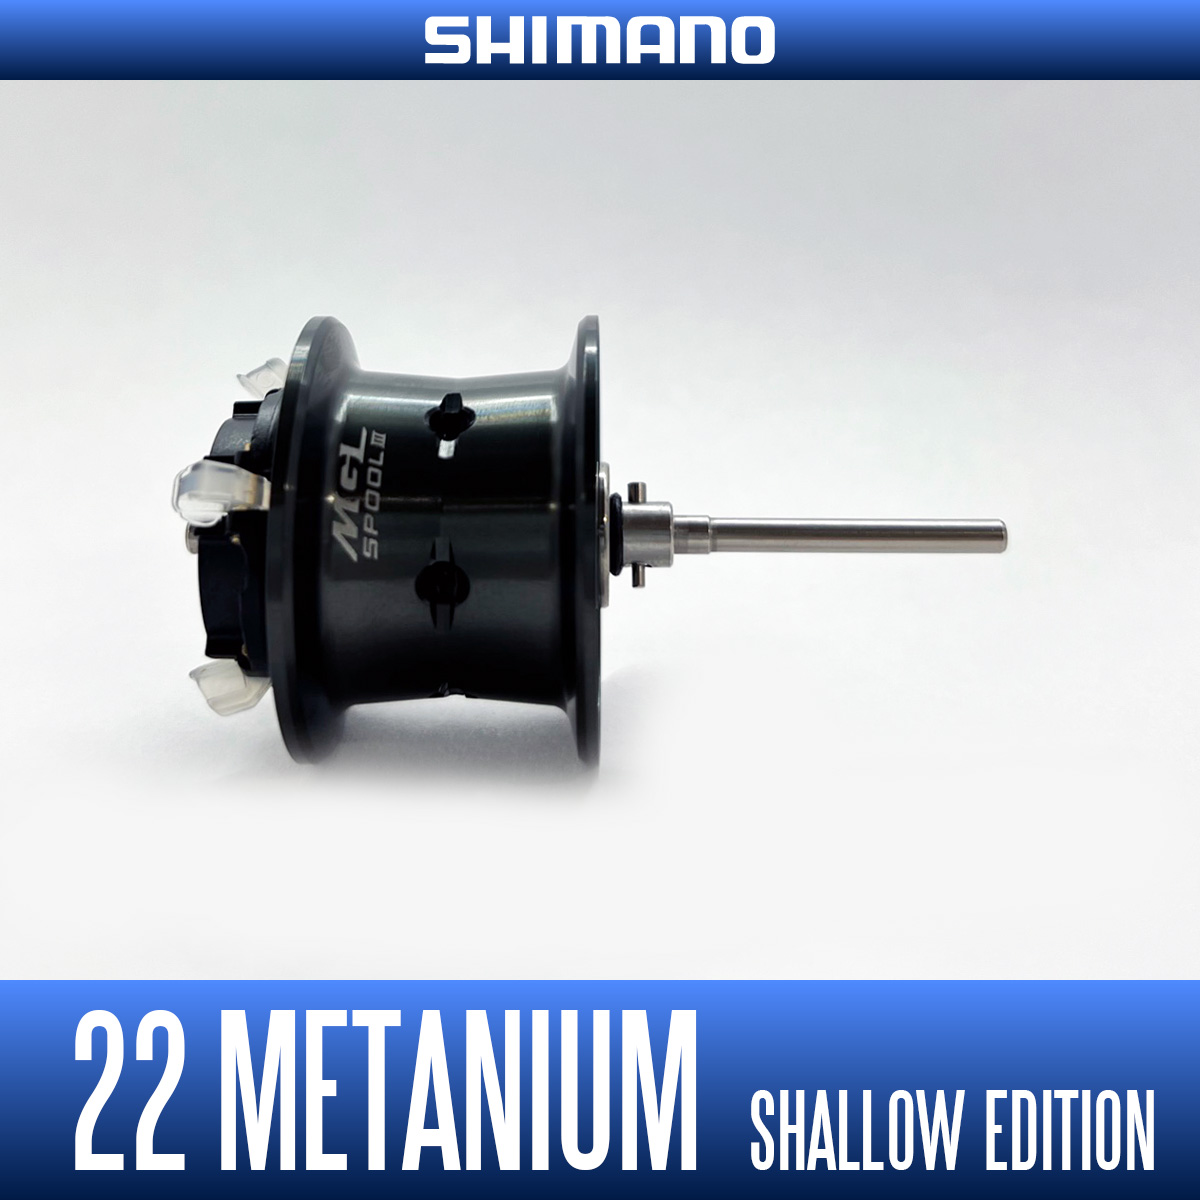 シマノ 22 メタニウム シャローエディション XG LEFT SHIMANO | nate 